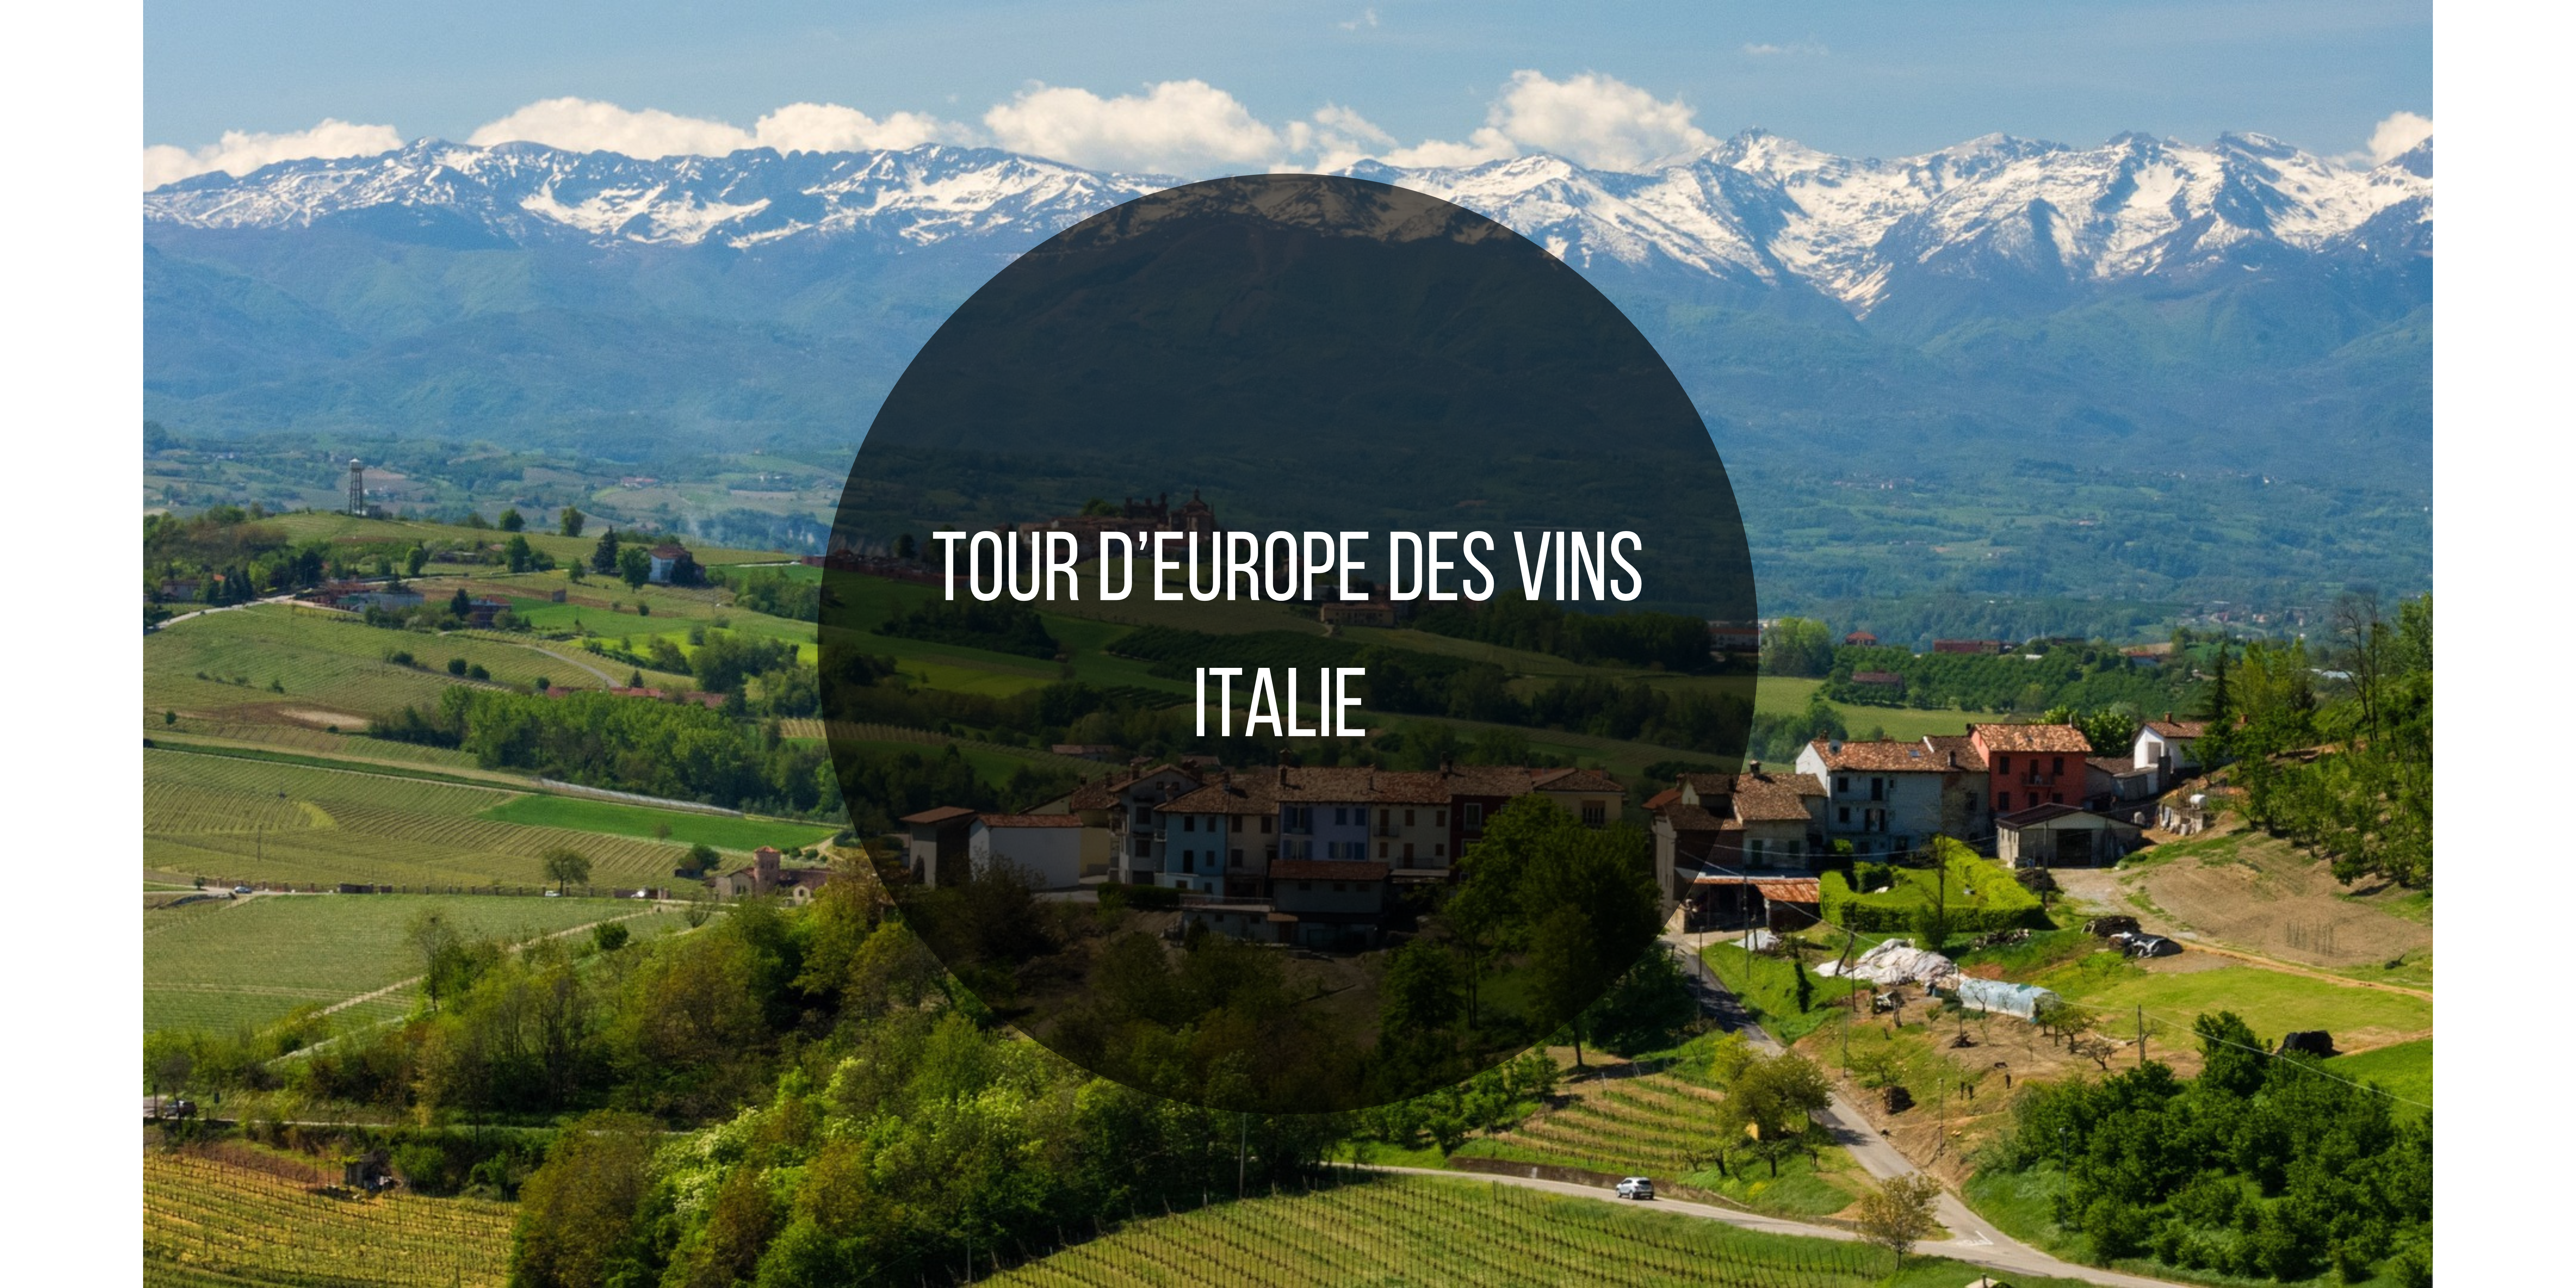 Dans cet article, nous explorons les vins et la viticulture spécifique à l'Italie: cépage, viticulture, vinification, changement climatique et commerce des vins italiens.